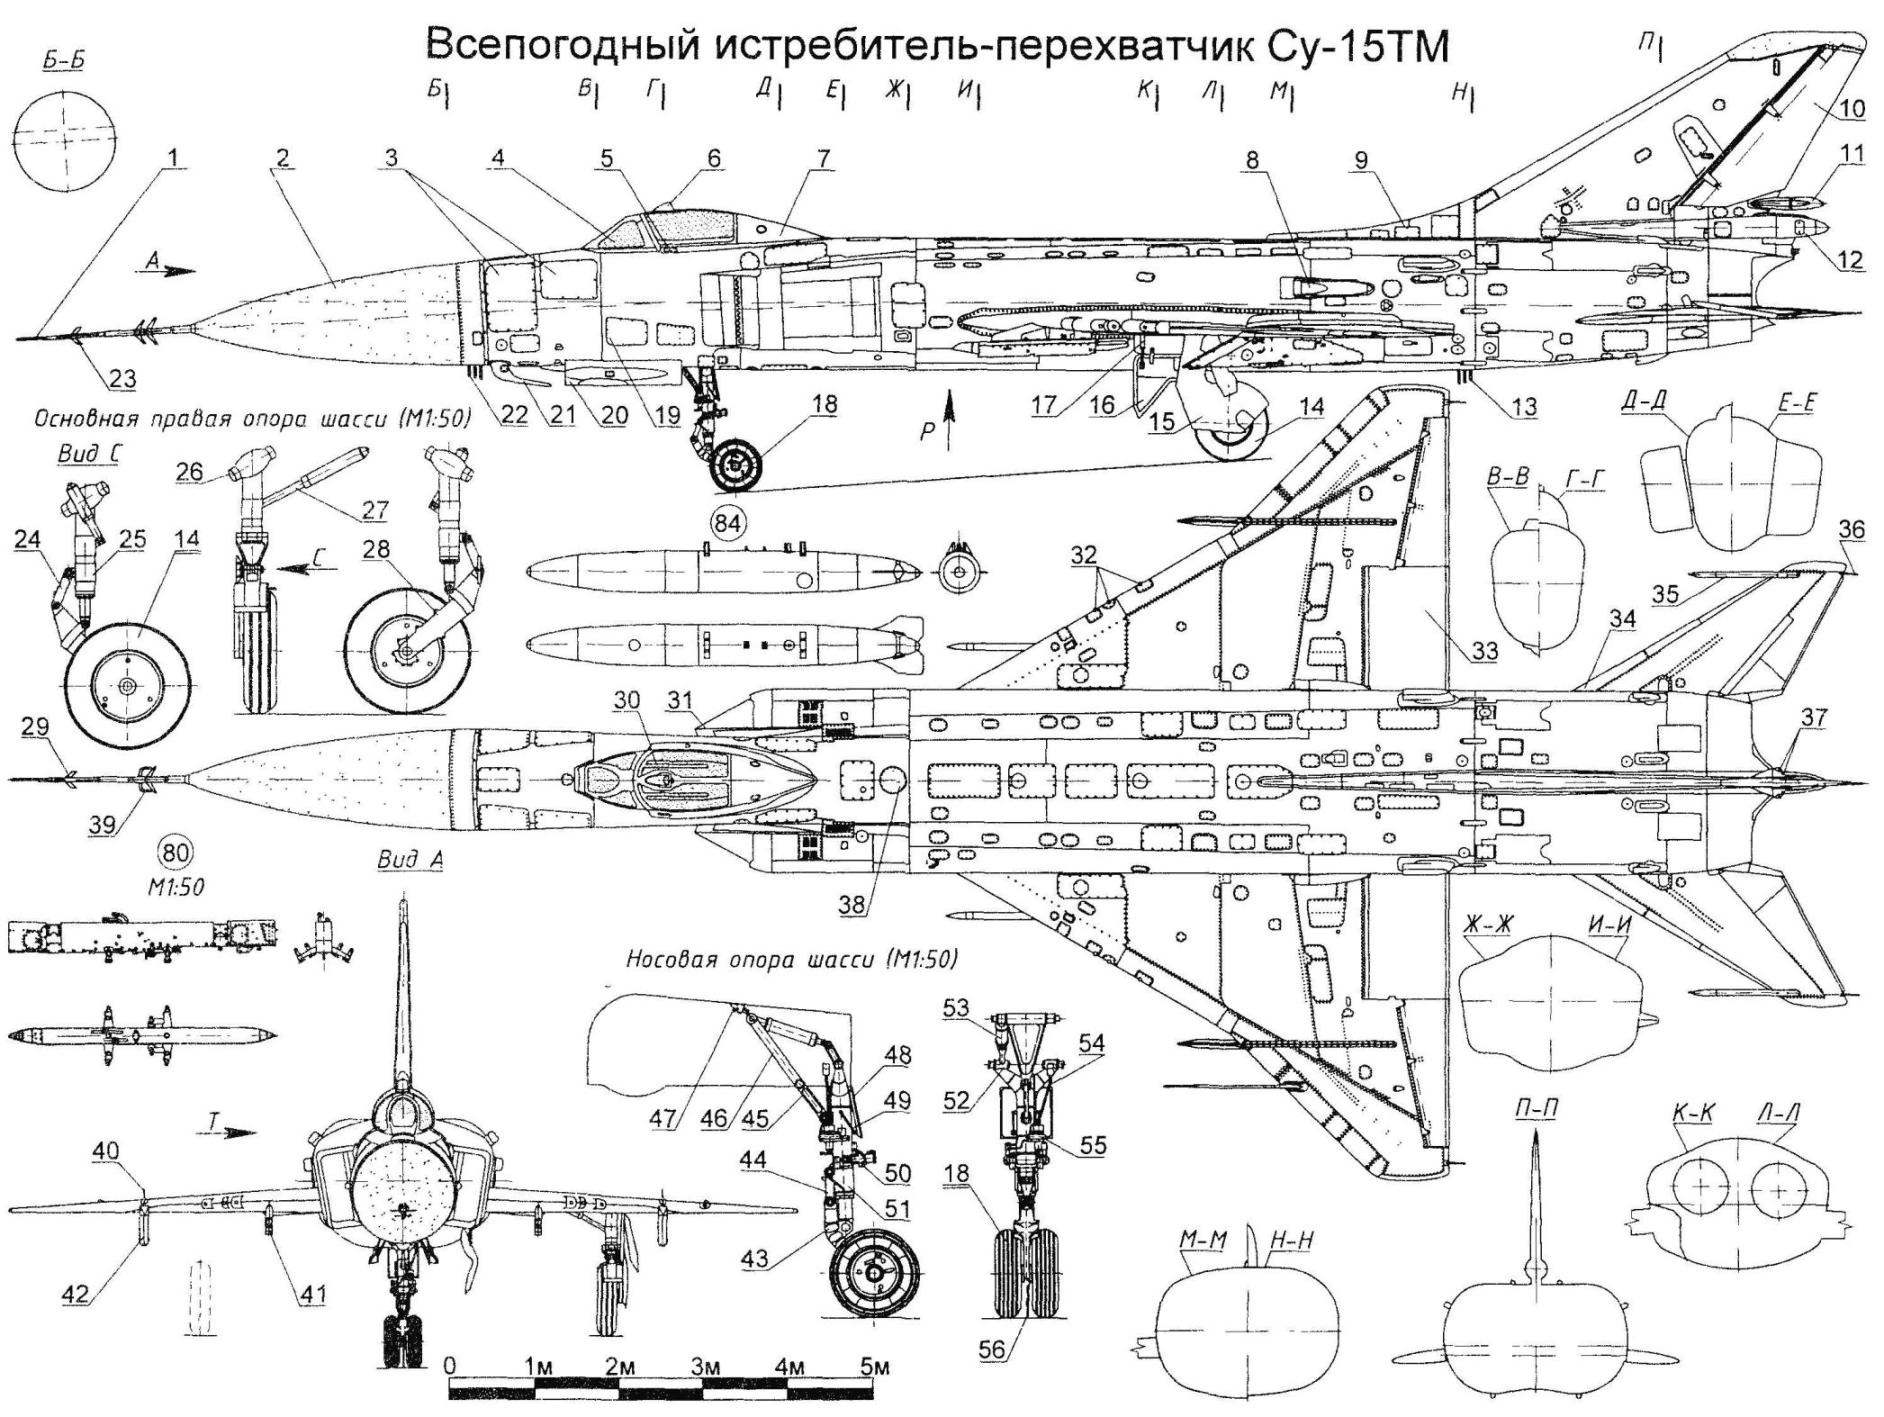 Всепогодный истребитель-перехватчик Су-15ТМ